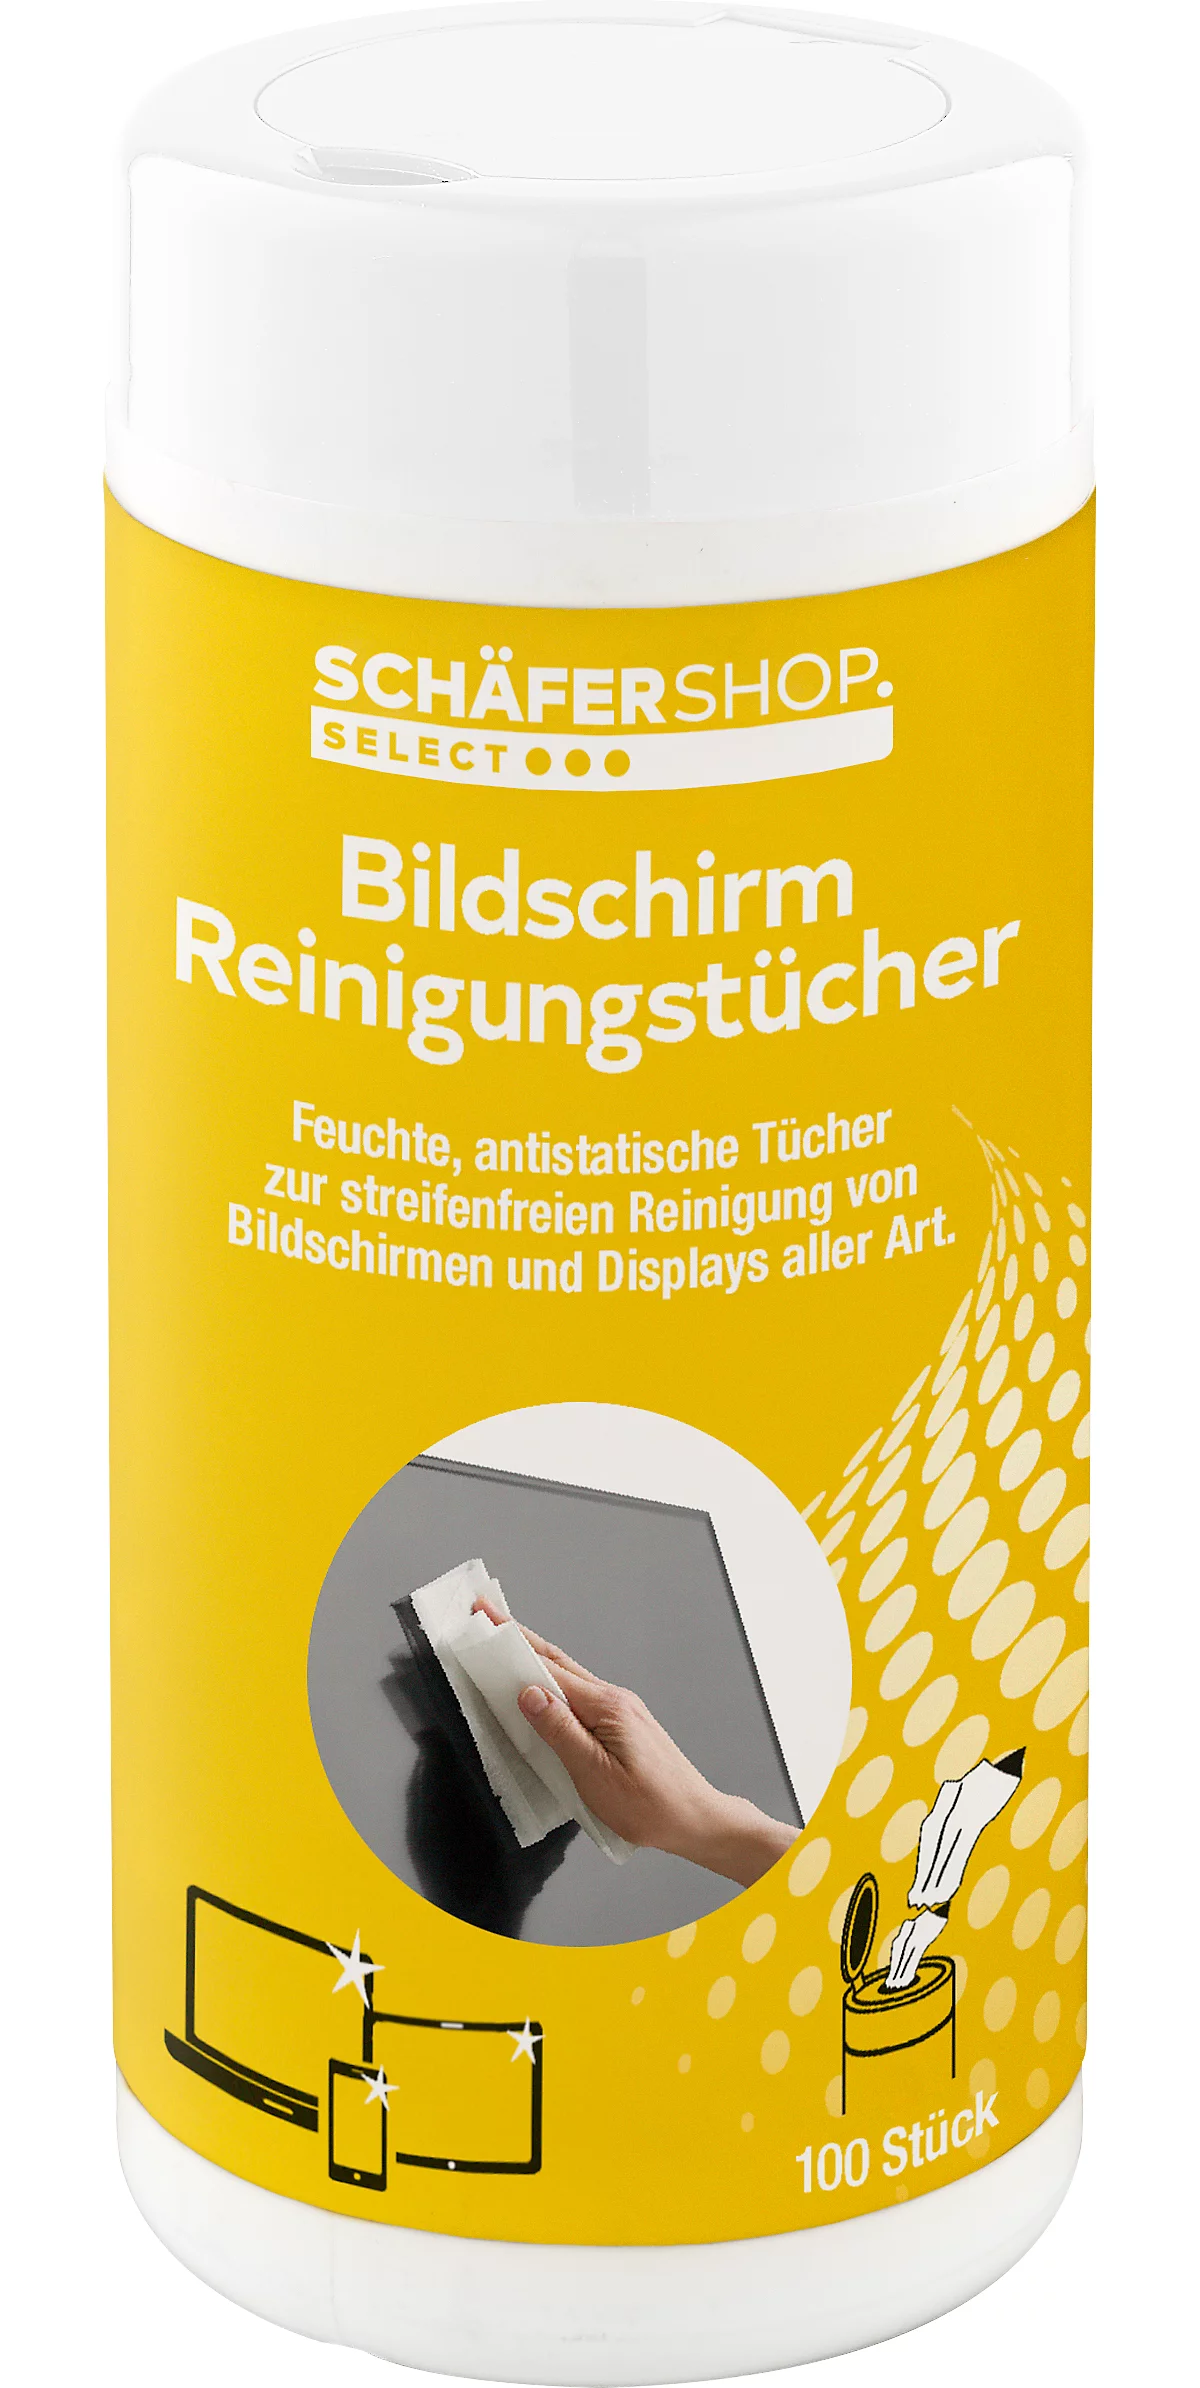 Schäfer Shop Select Reinigungstücher, für Bildschirme, feucht, in praktischer Spenderdose, 100 Stück